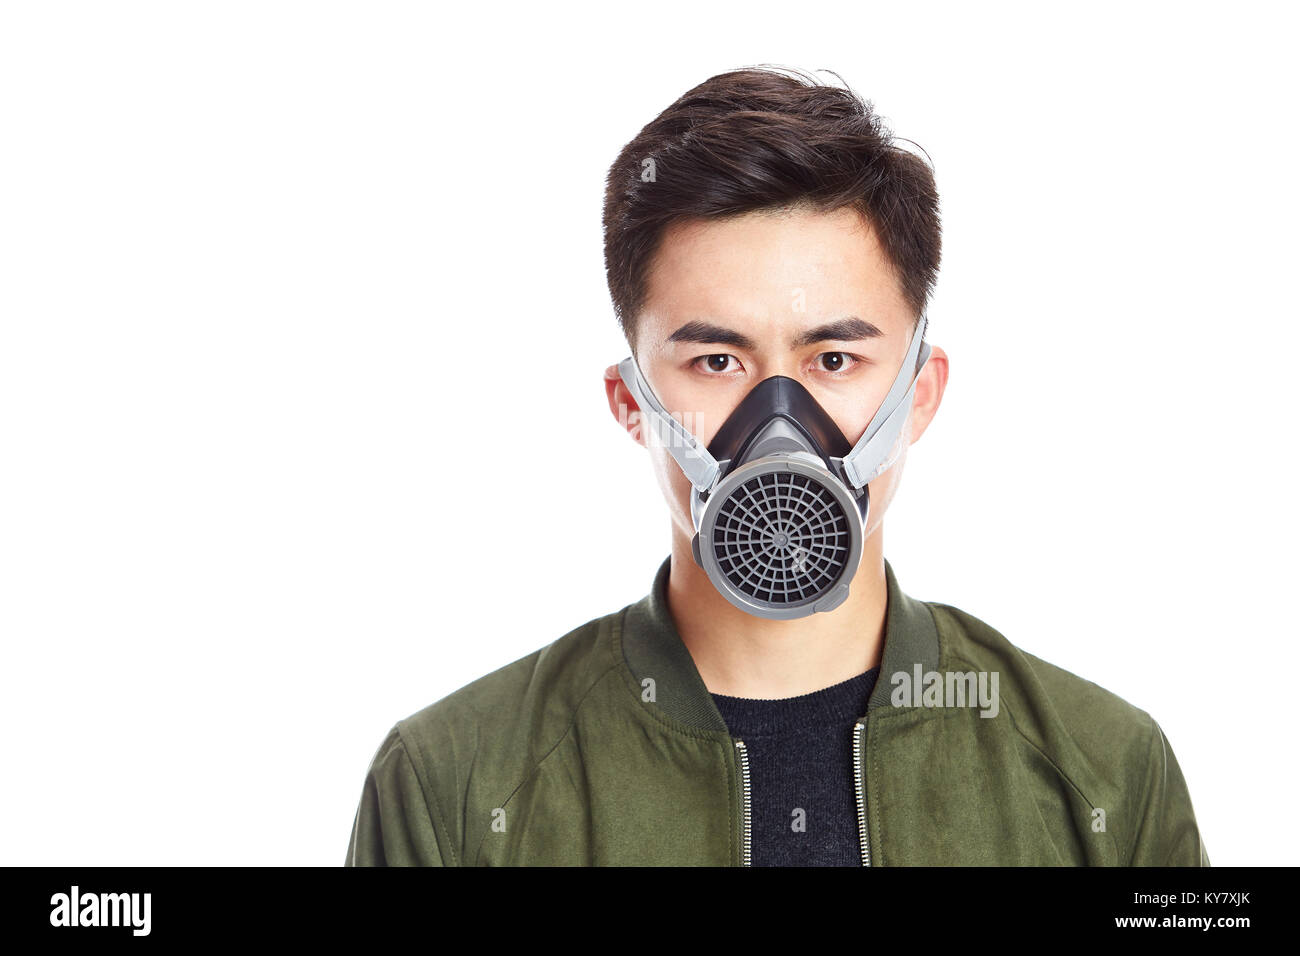 Foto de estudio de un joven asiático hombre que llevaba una máscara de gas, mirando a la cámara, aislado sobre fondo blanco. Foto de stock